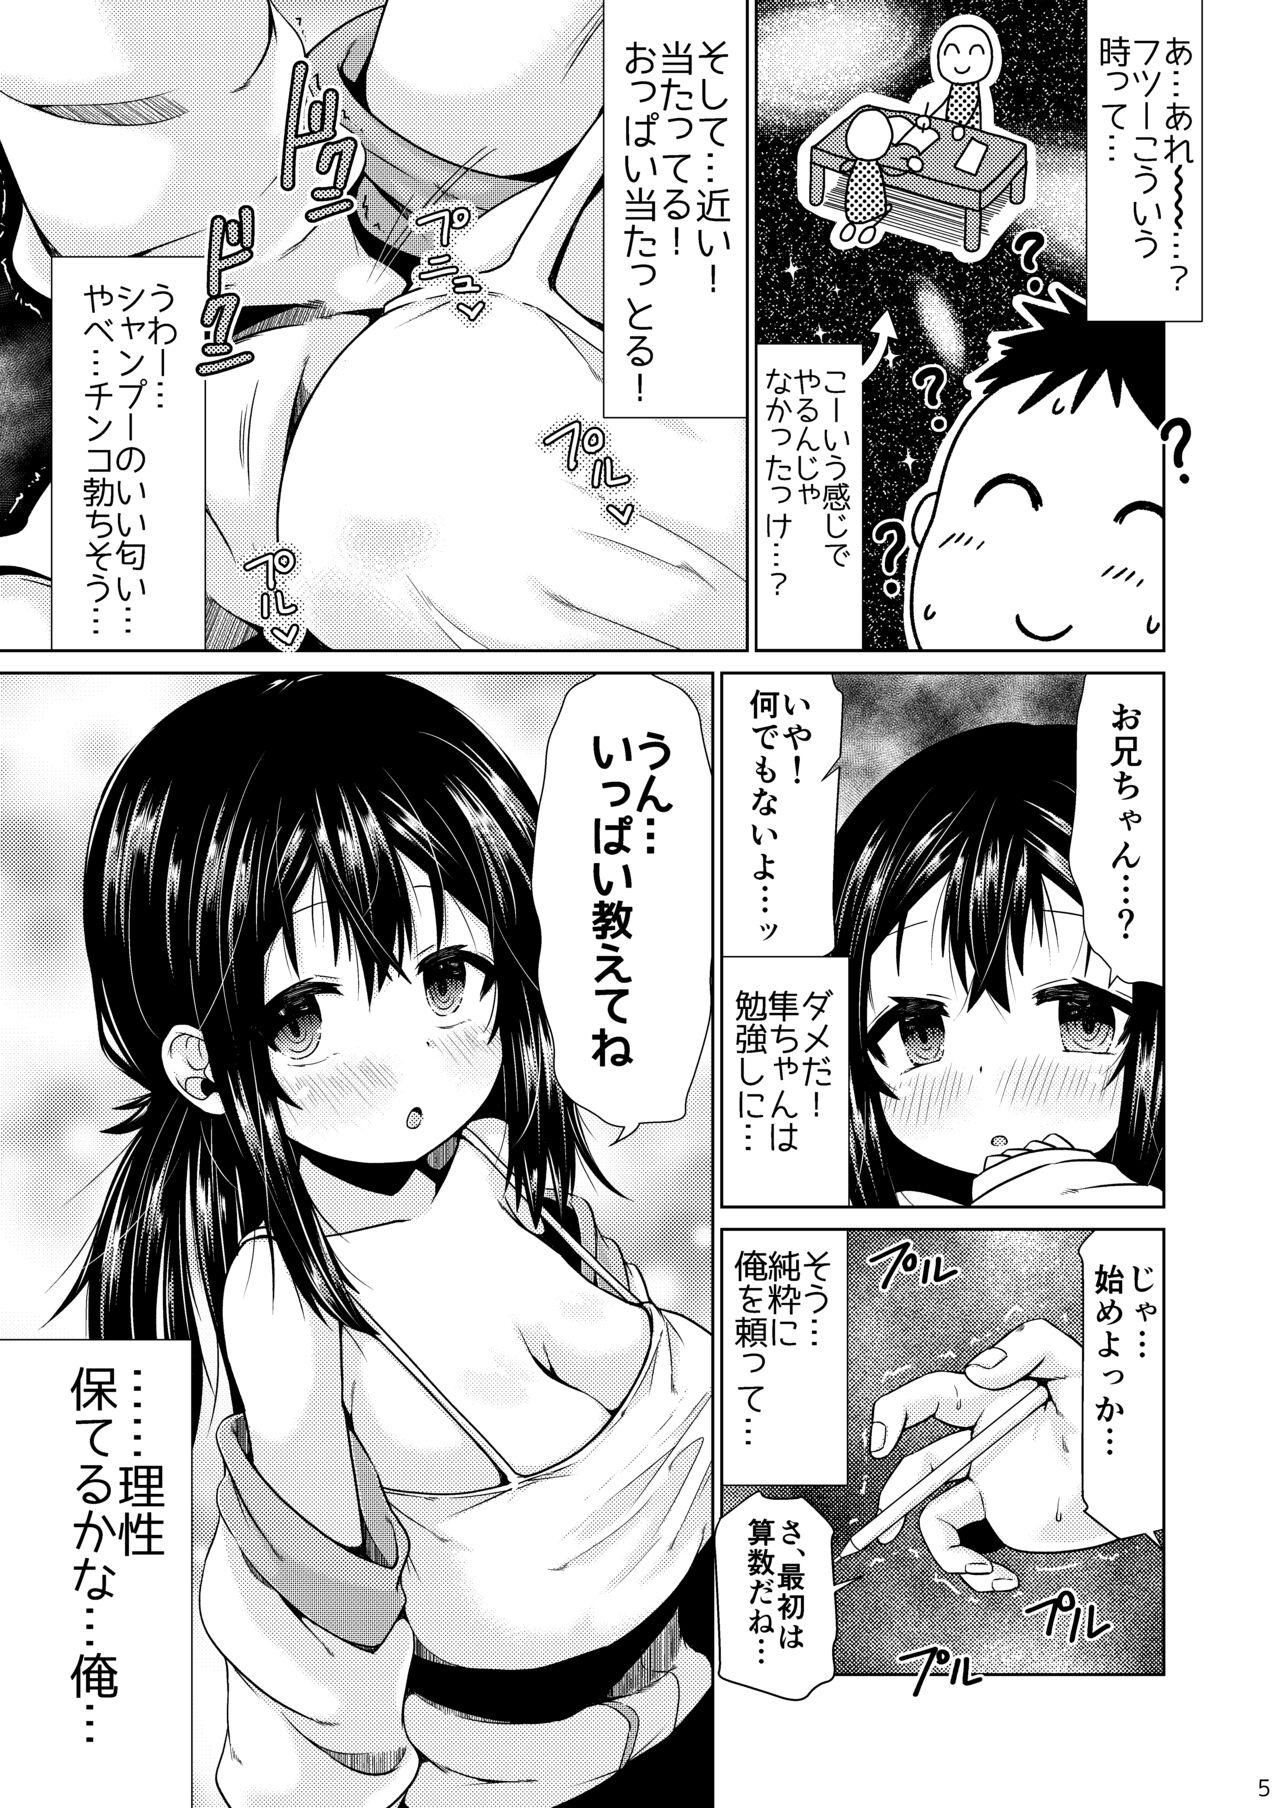 Shemale Otonari no J ￮ ga nani o kangae teru ka wakaranai kudan. - Original Roundass - Page 4